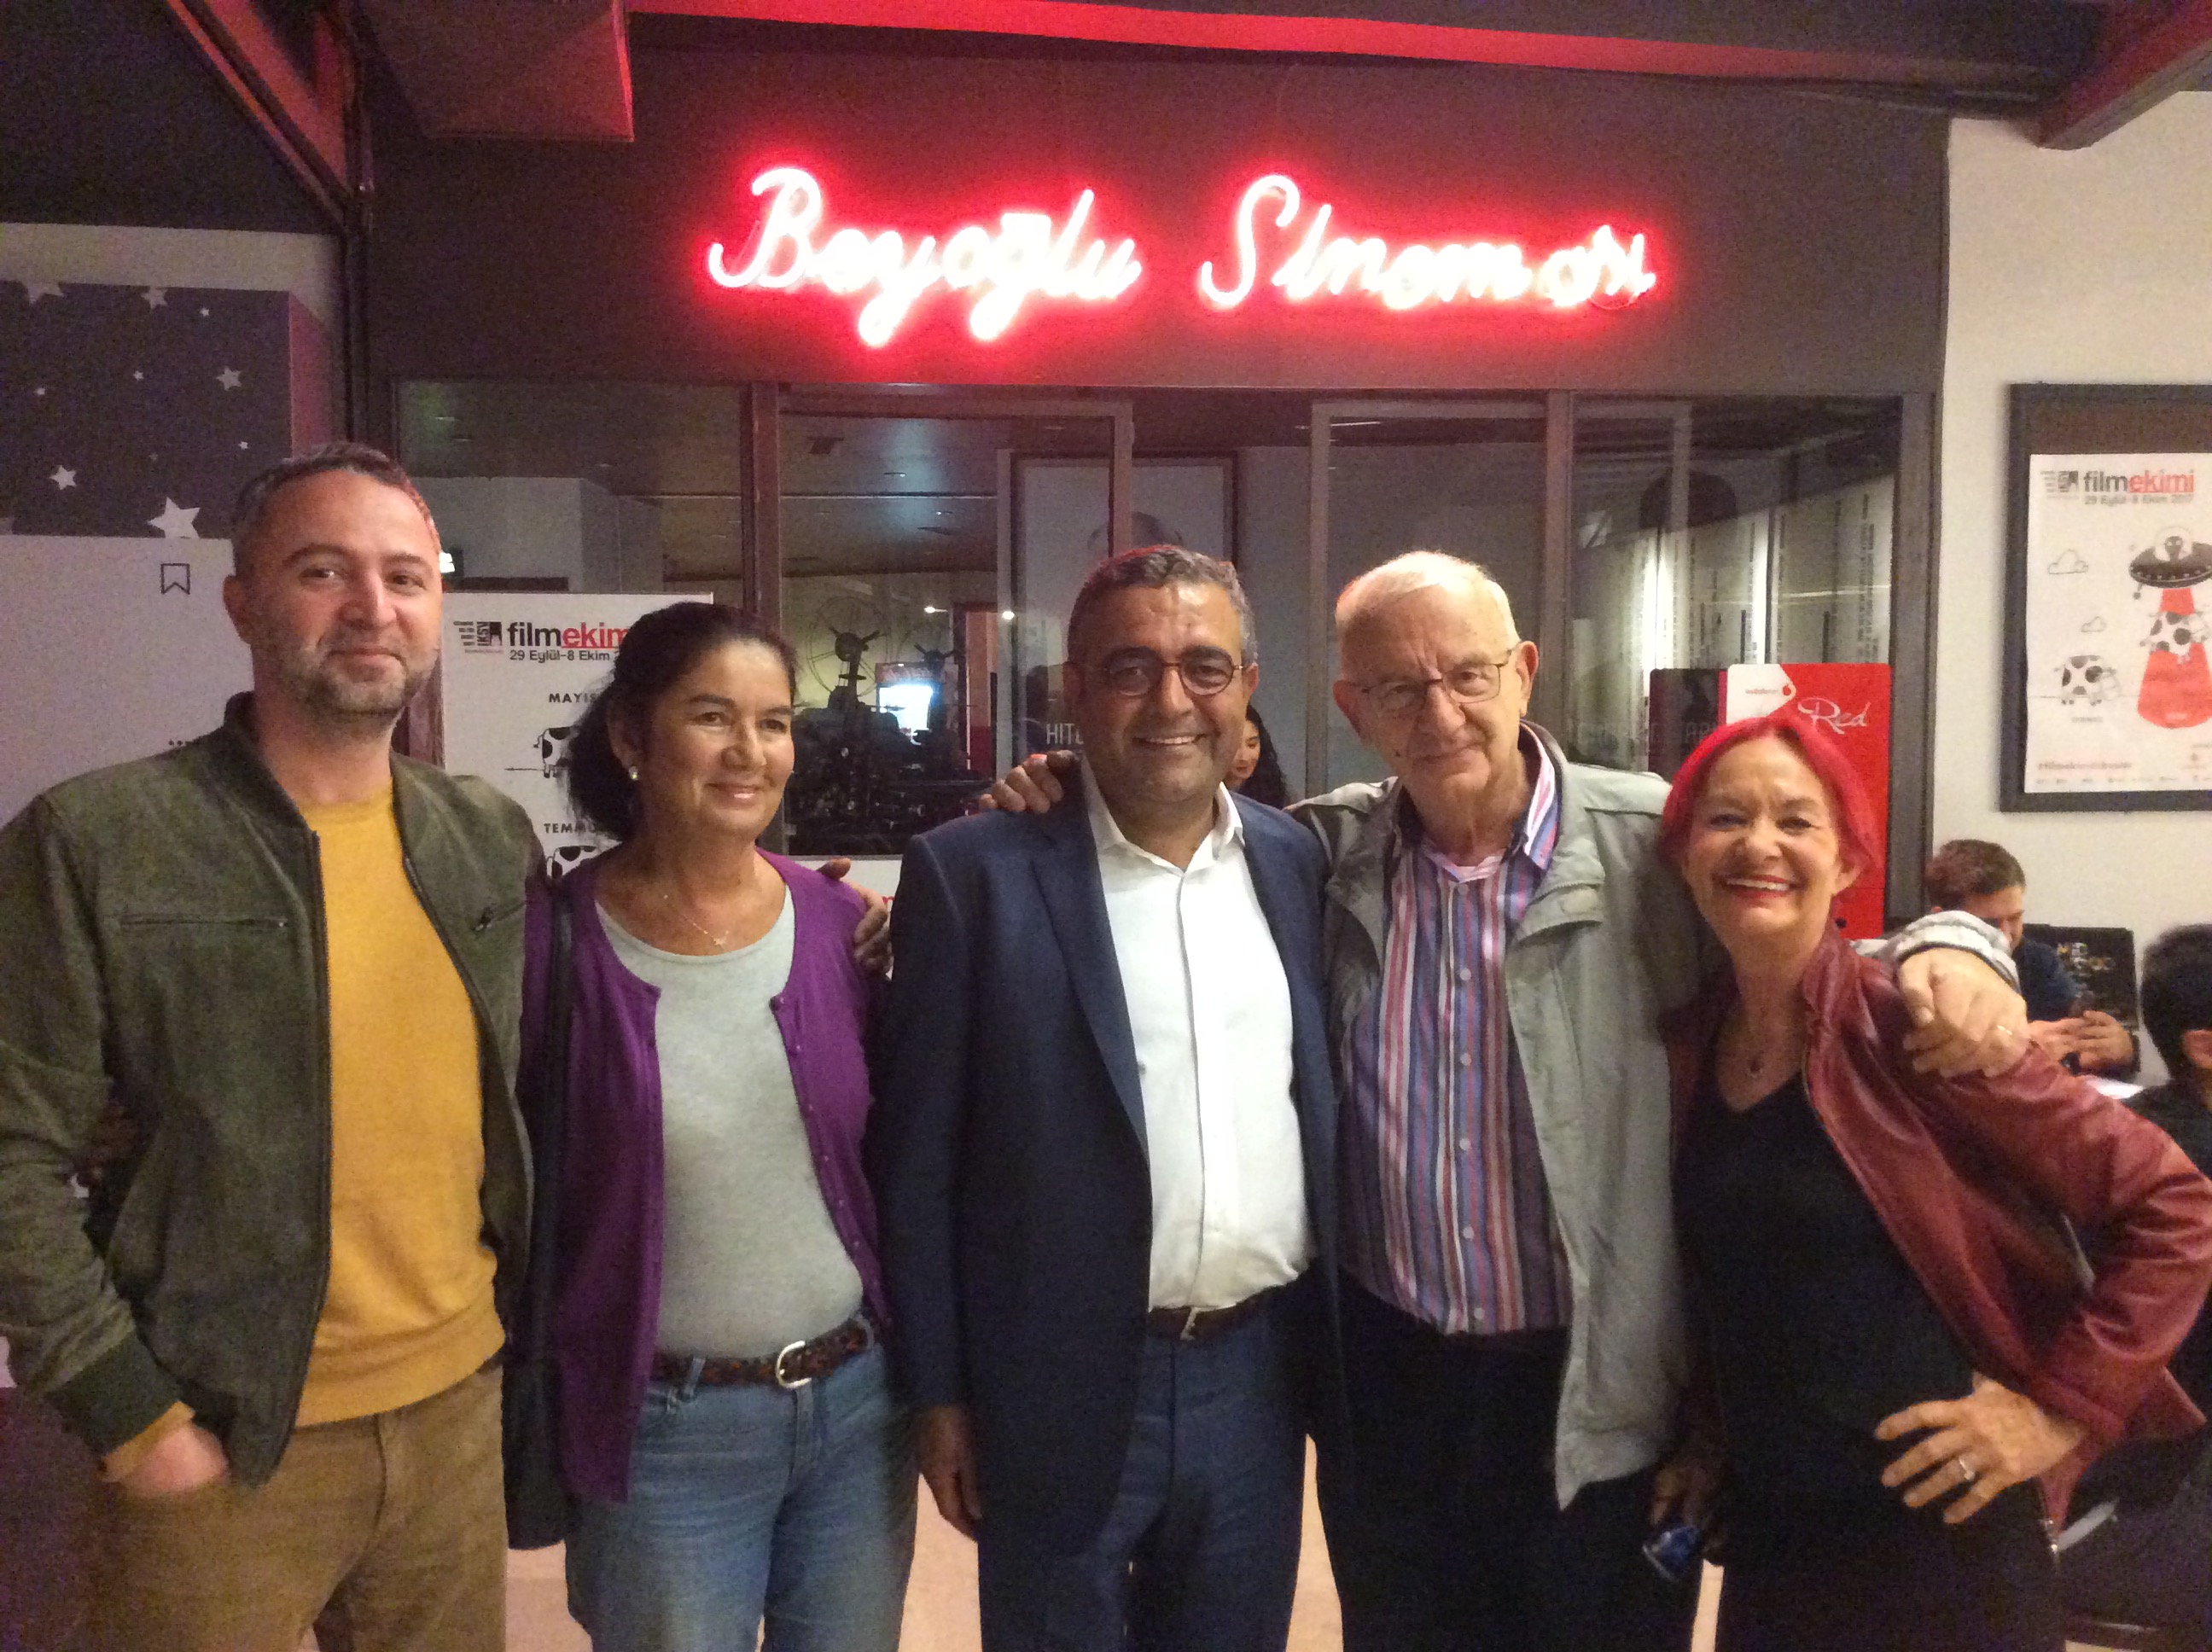 Beyoğlu Sineması'nın yeni sahibi Cem Altınsay, Leman Dorsay, Sezgin Tanrıkulu, Atilla Dorsay ve Pervin Tan 